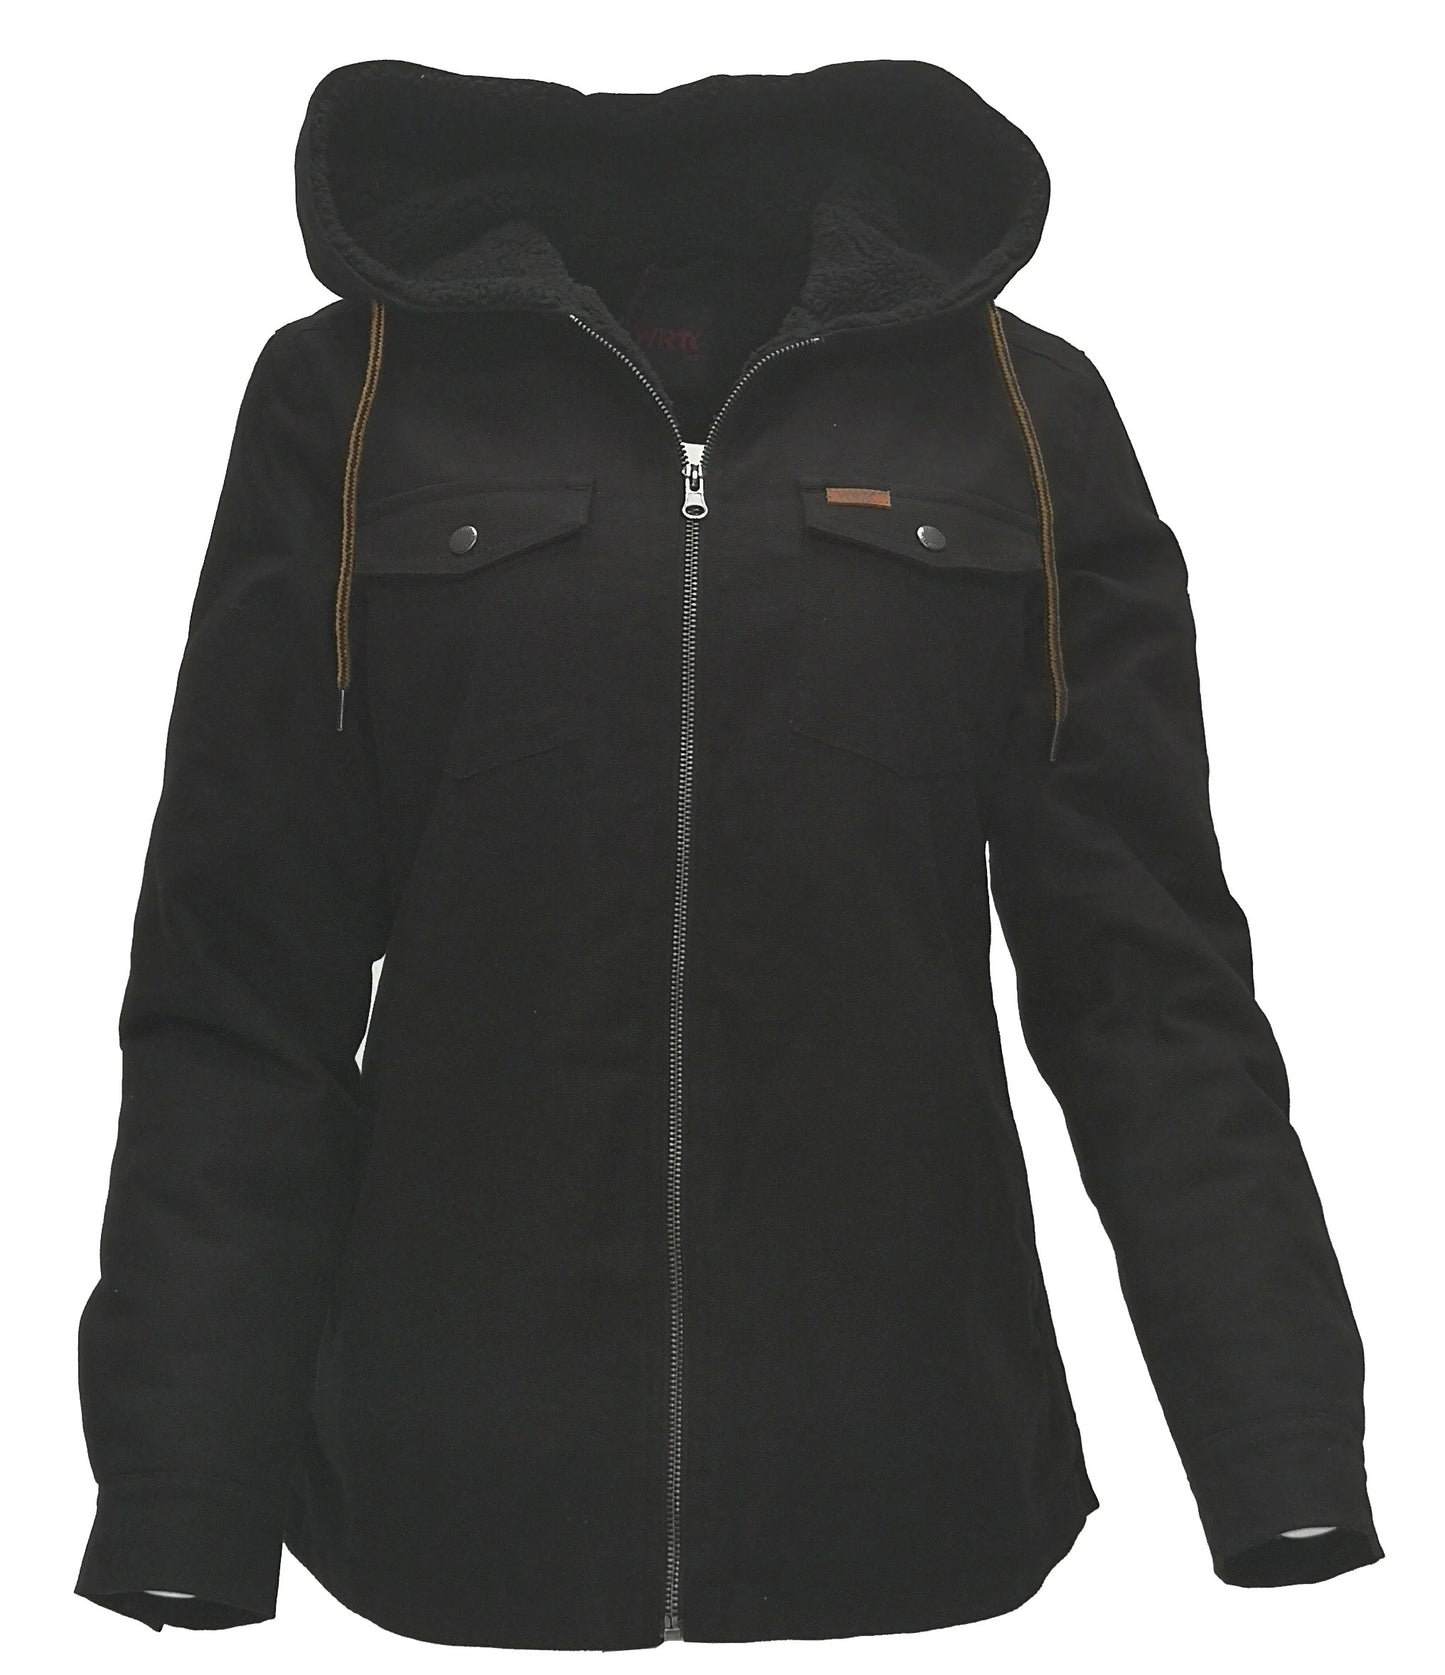 Manteau en canvas extensible doublé sherpa pour femme TK-E60013L